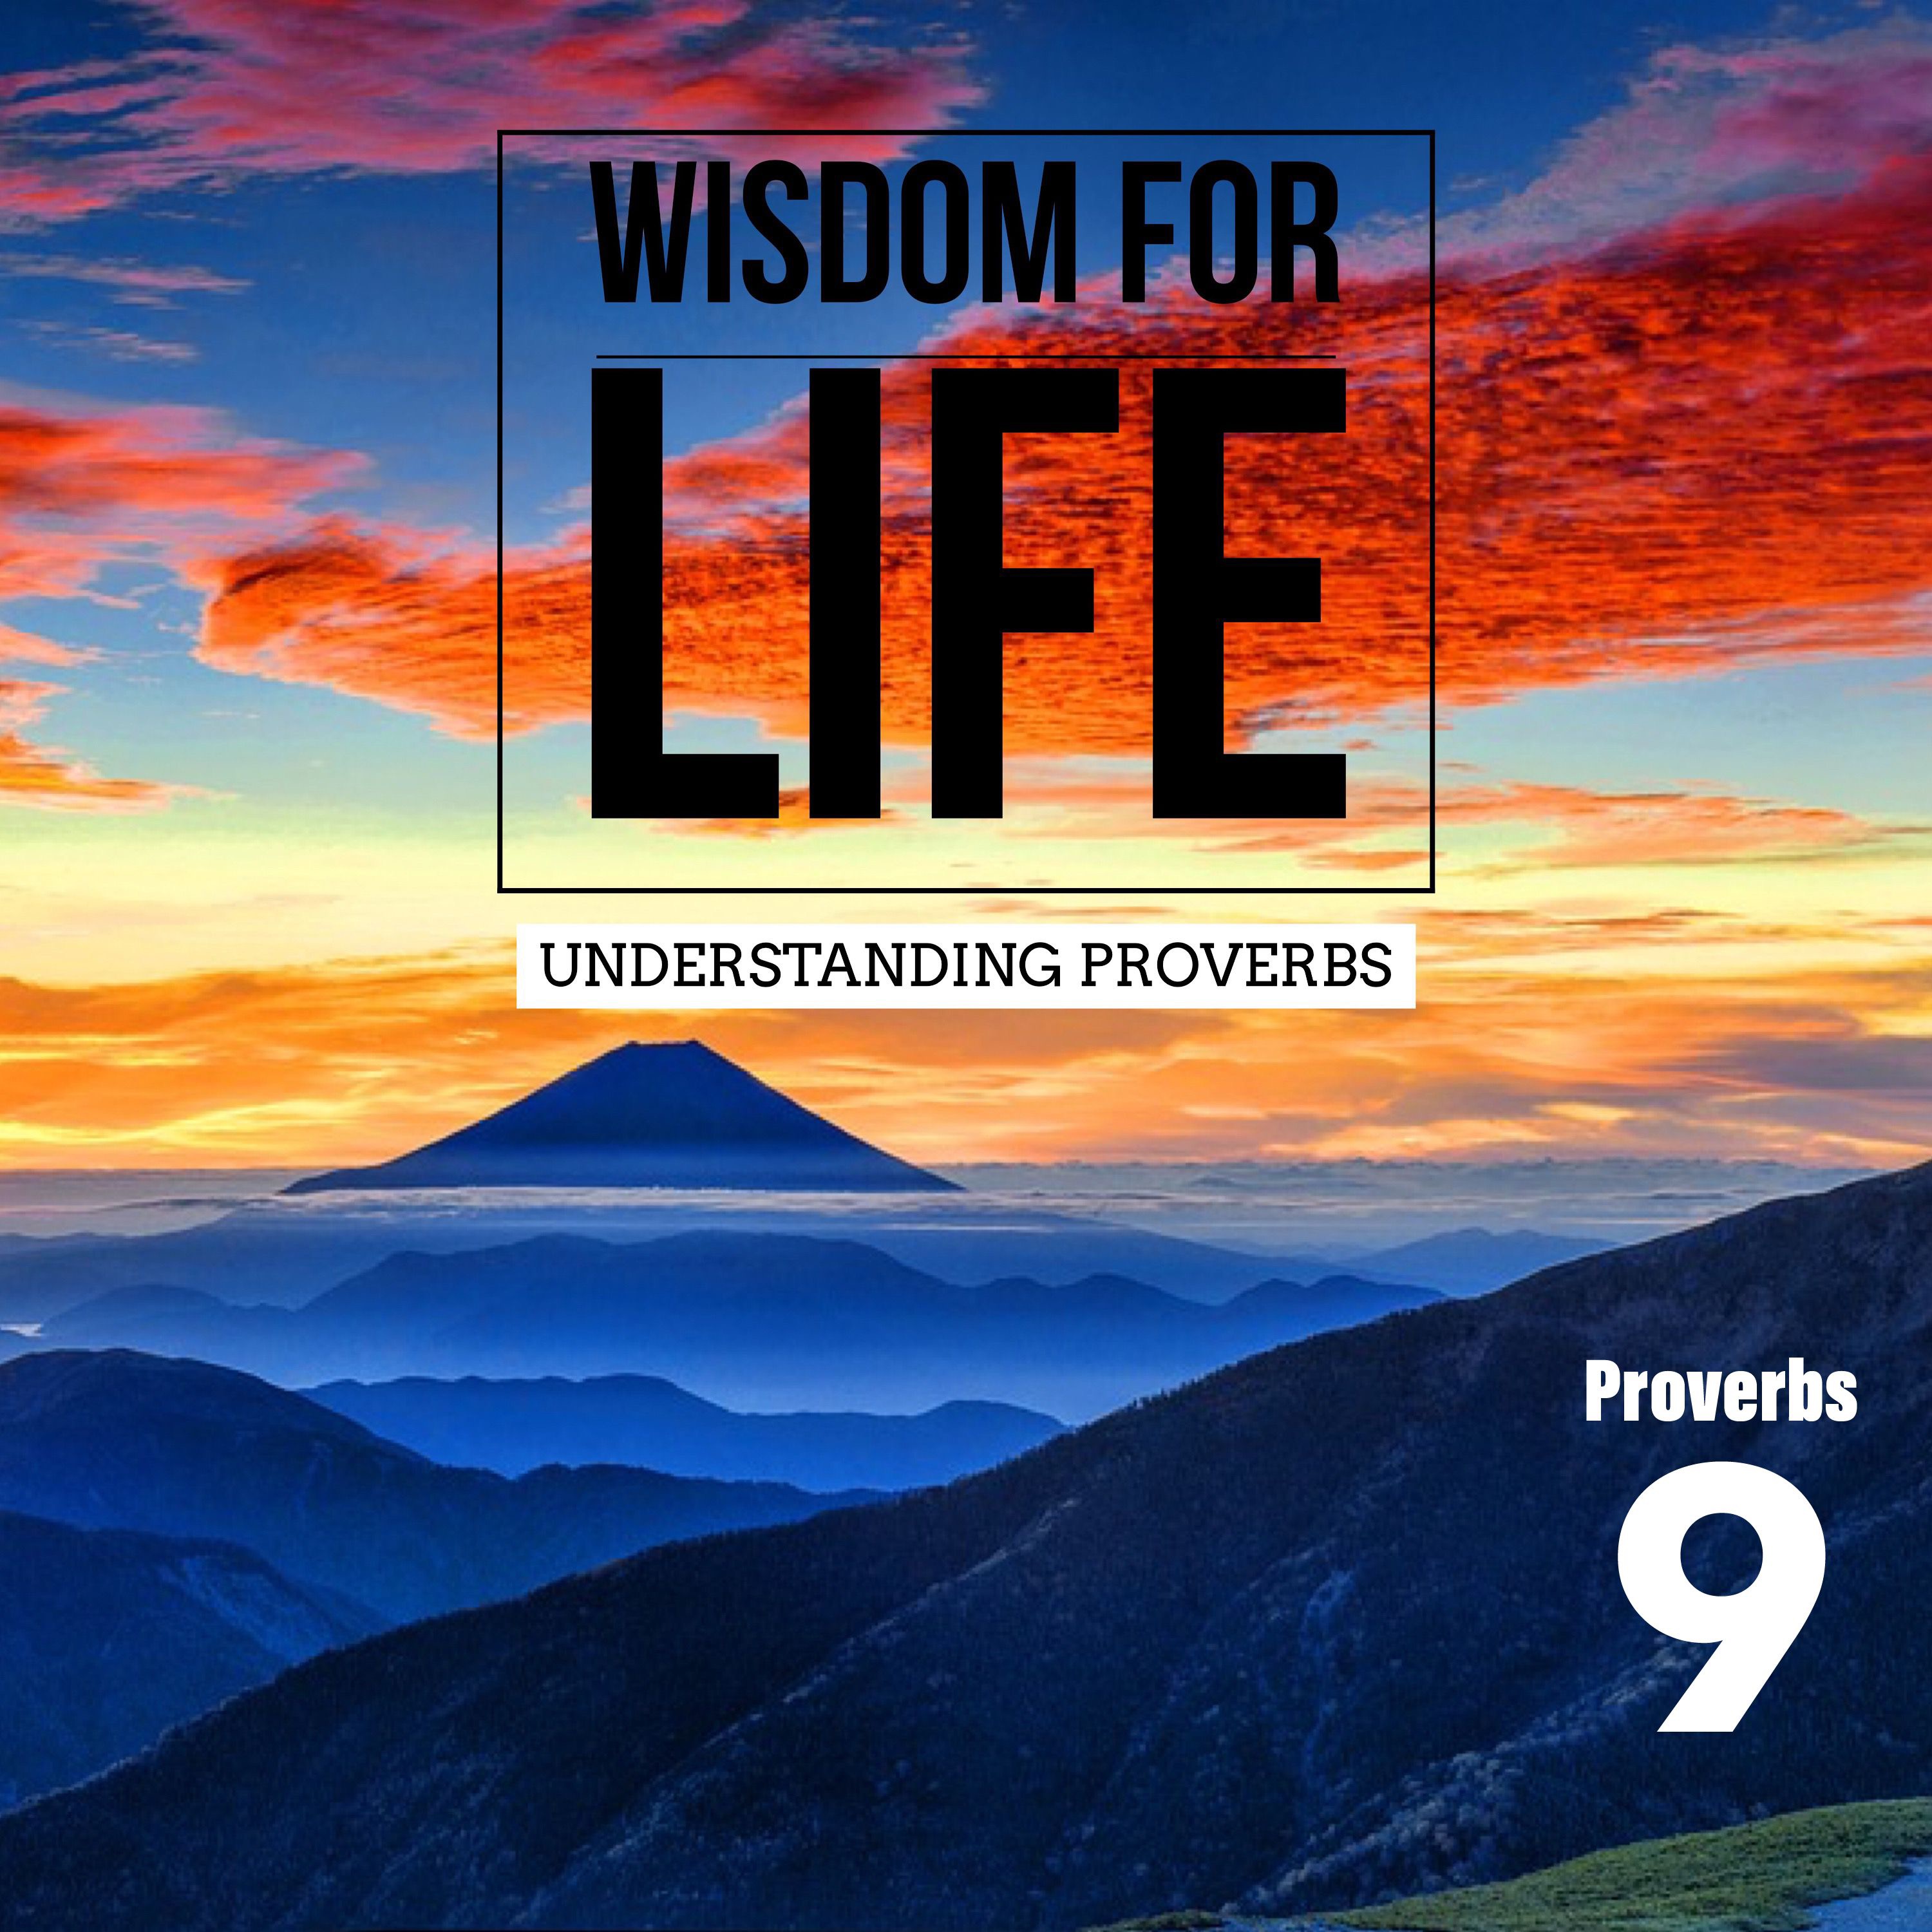 UNDERSTANDING PROVERBS 9